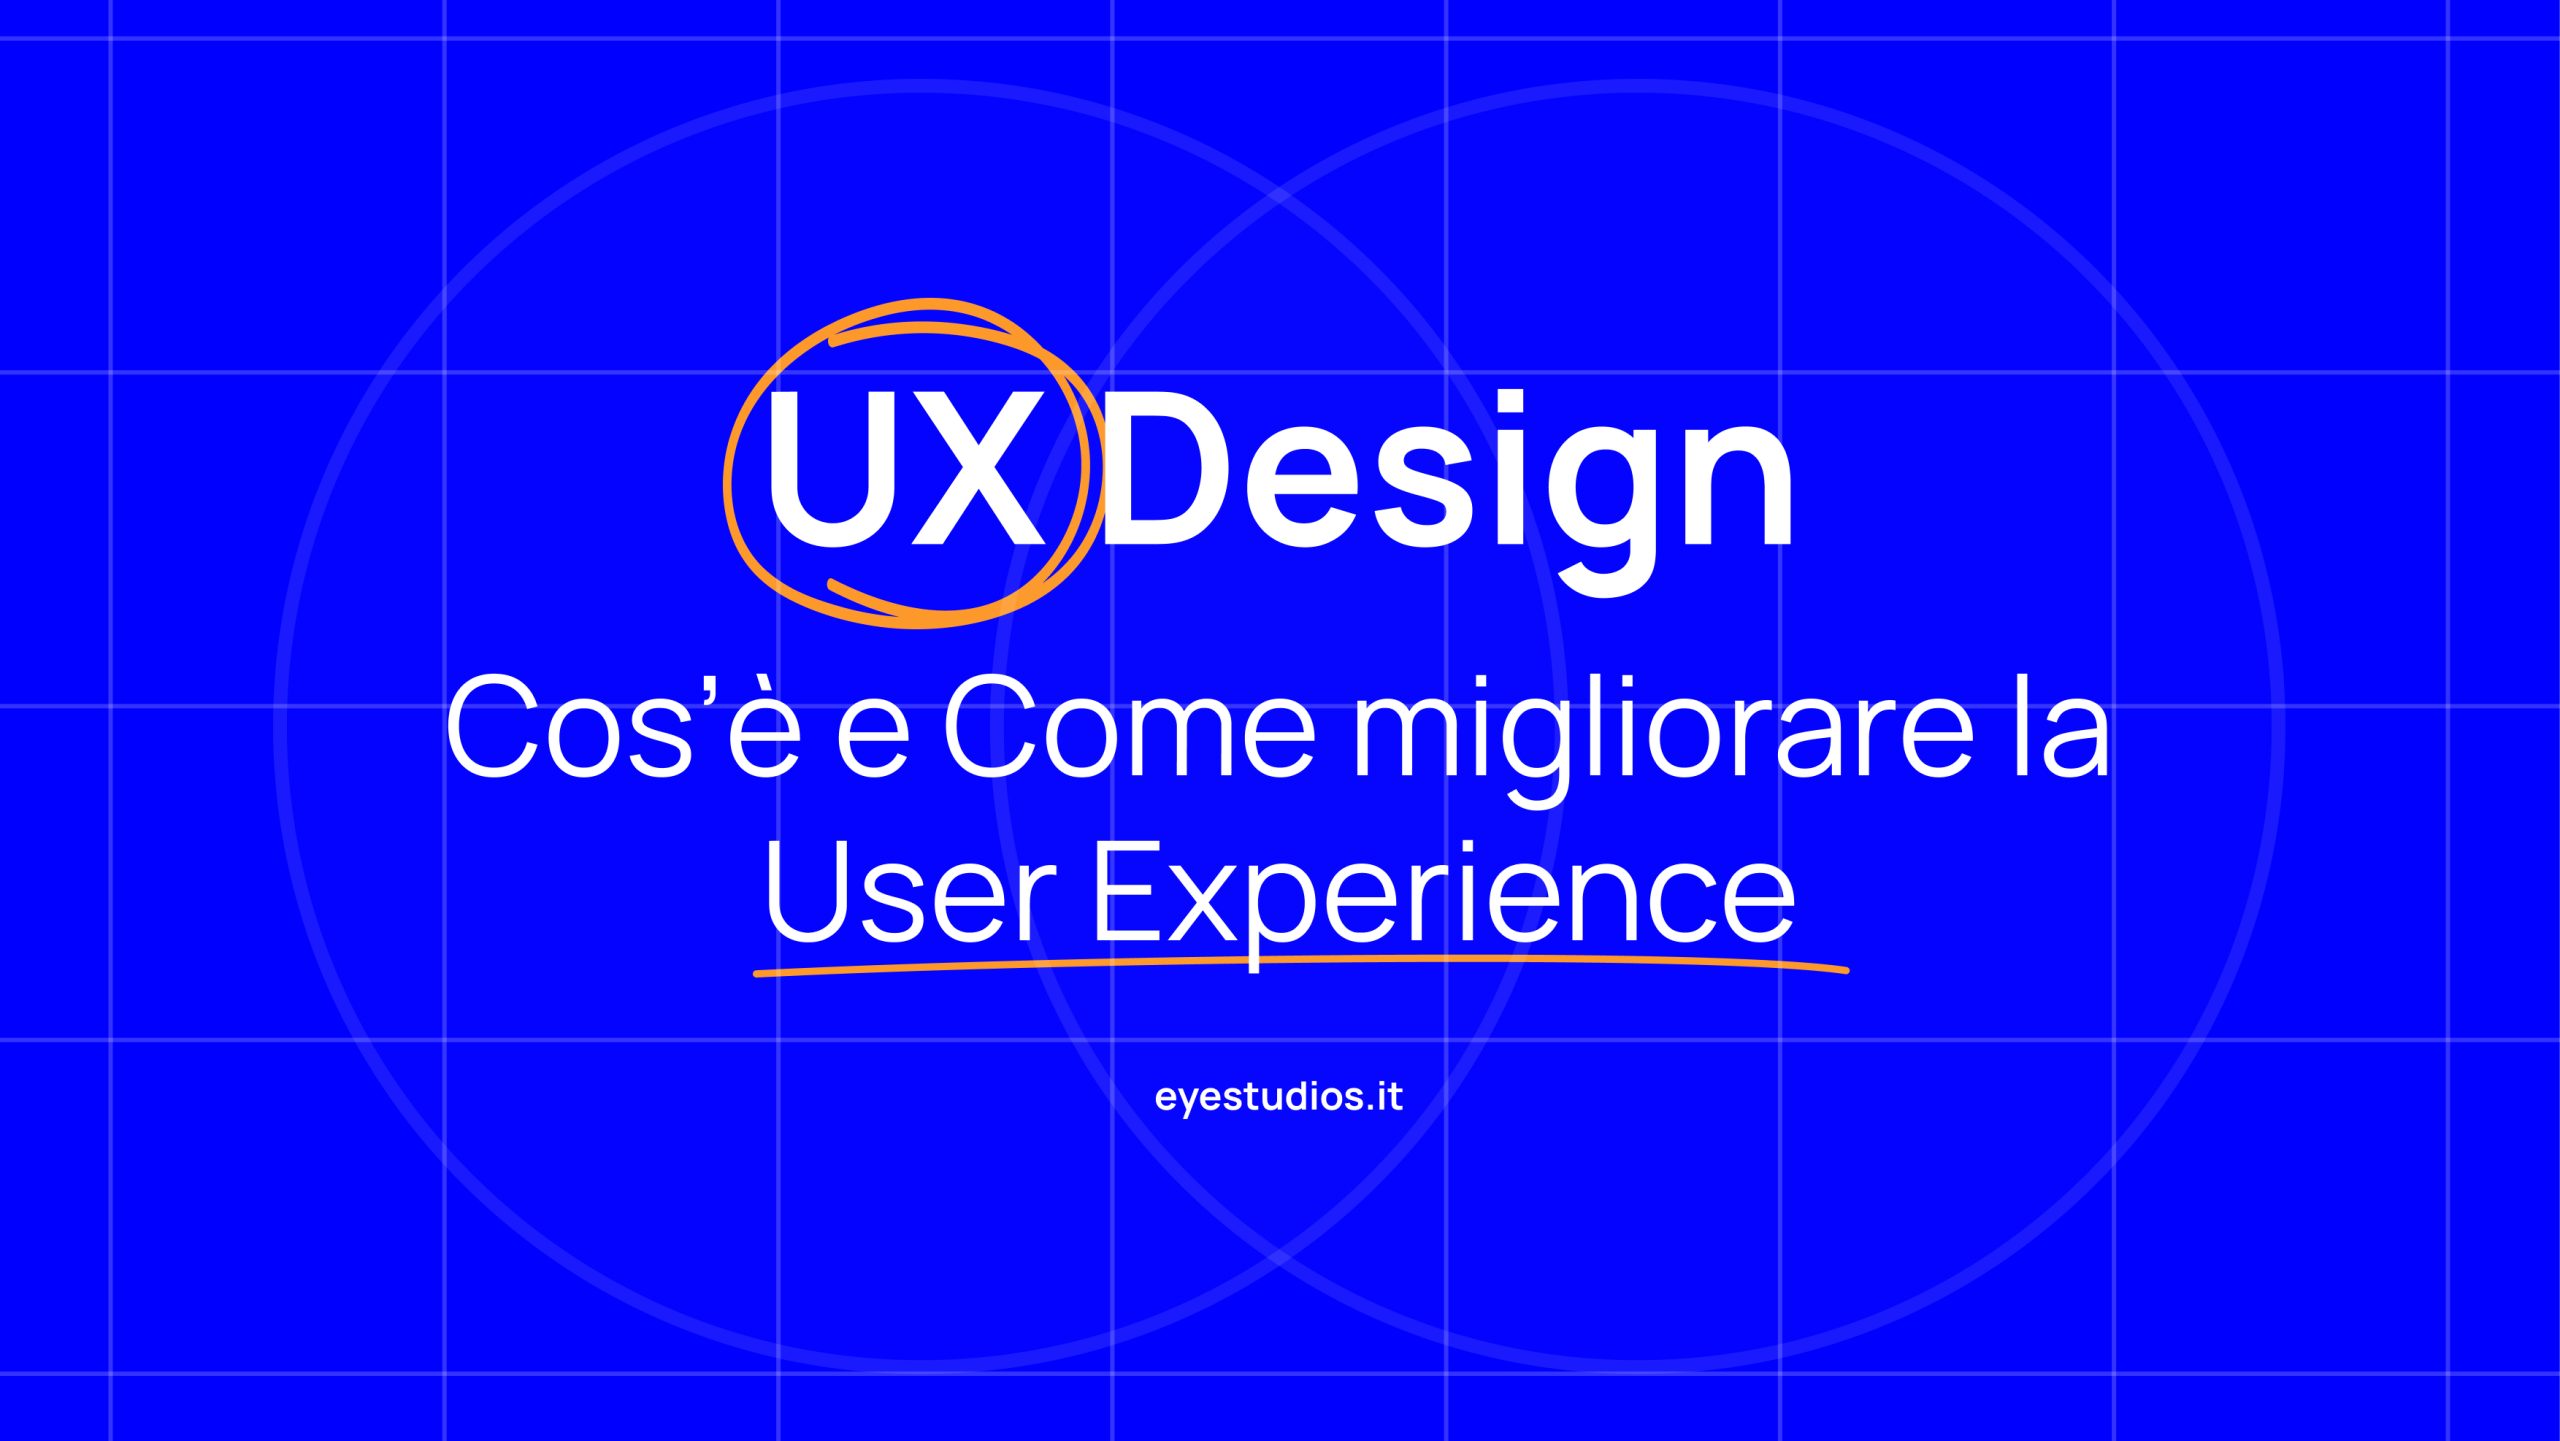 UX Design: Cos’è e Come migliorare la User Experience